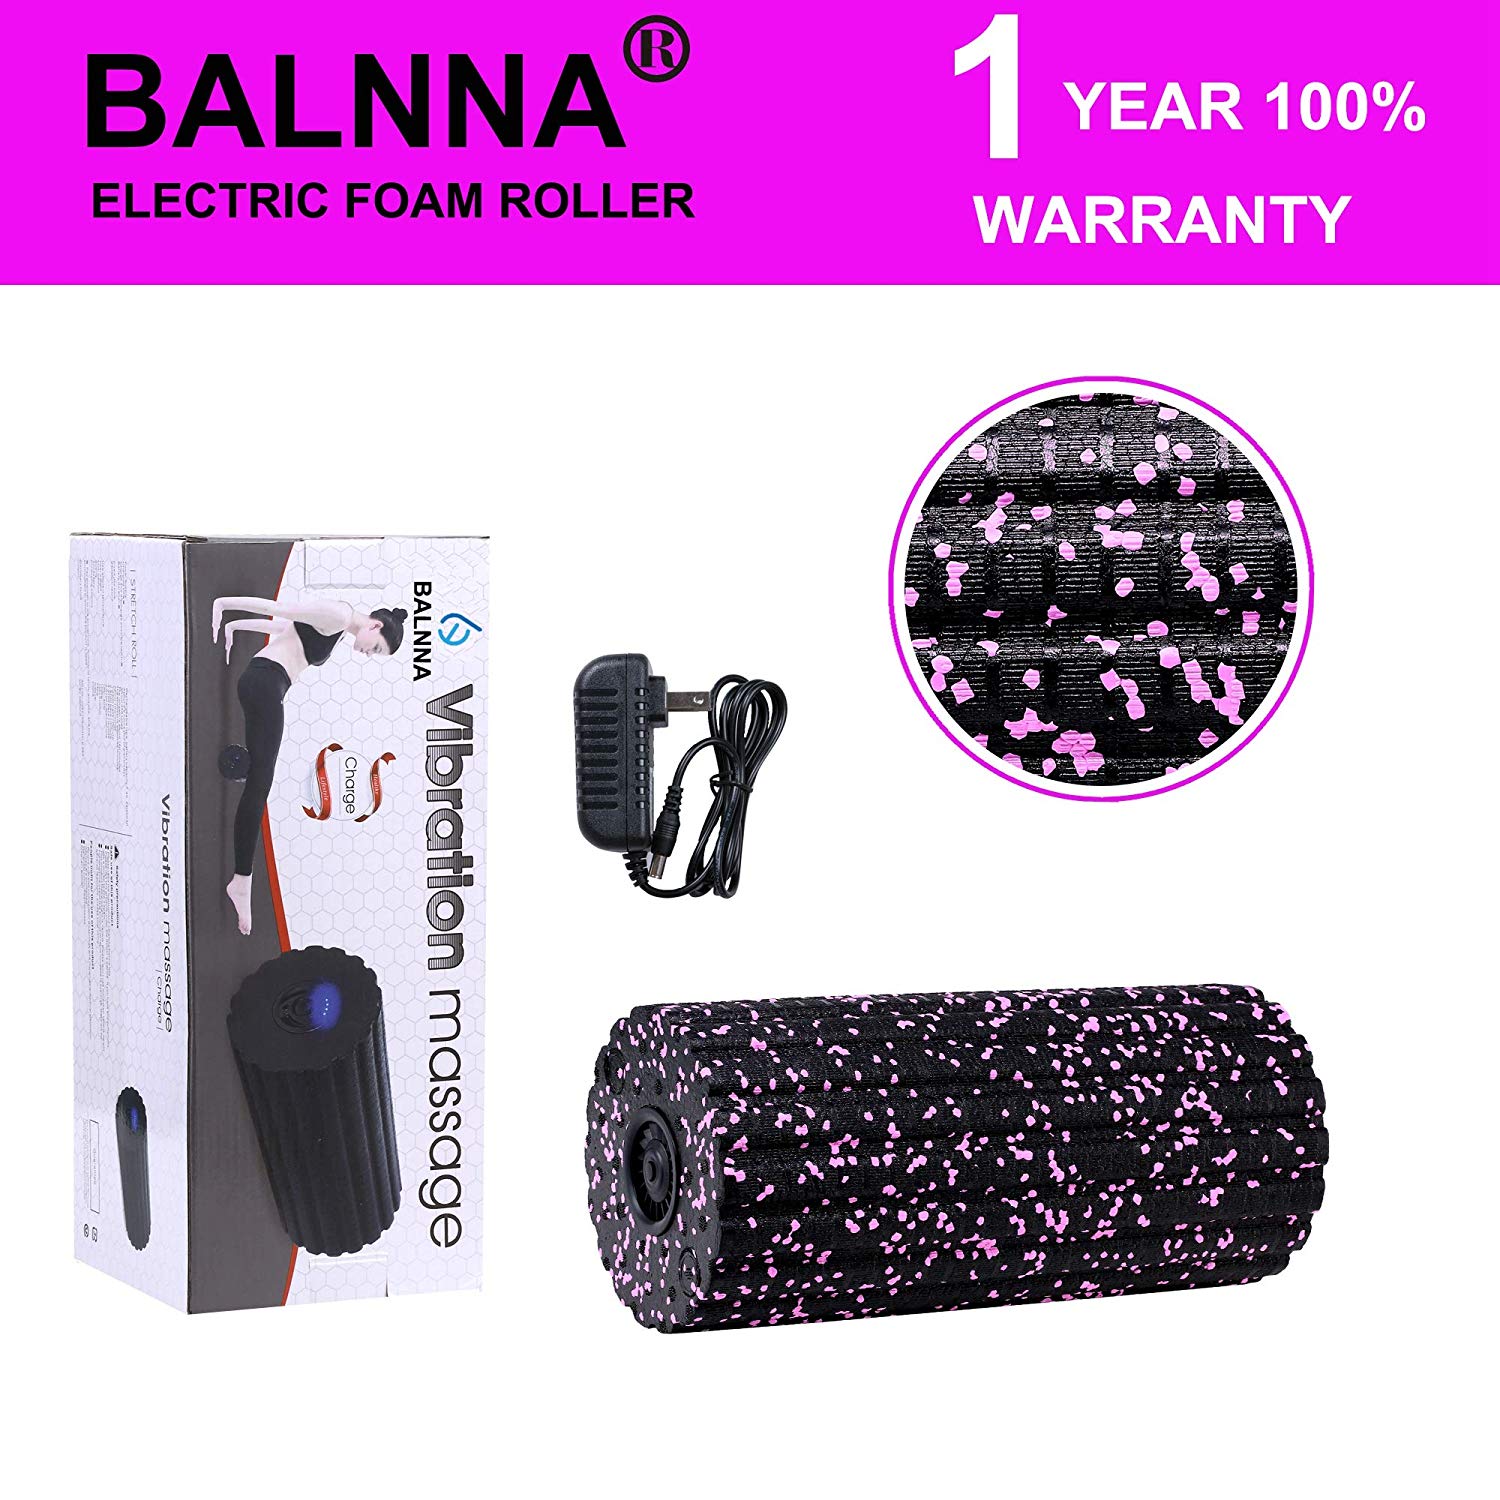 Balnna Electric Foam Roller